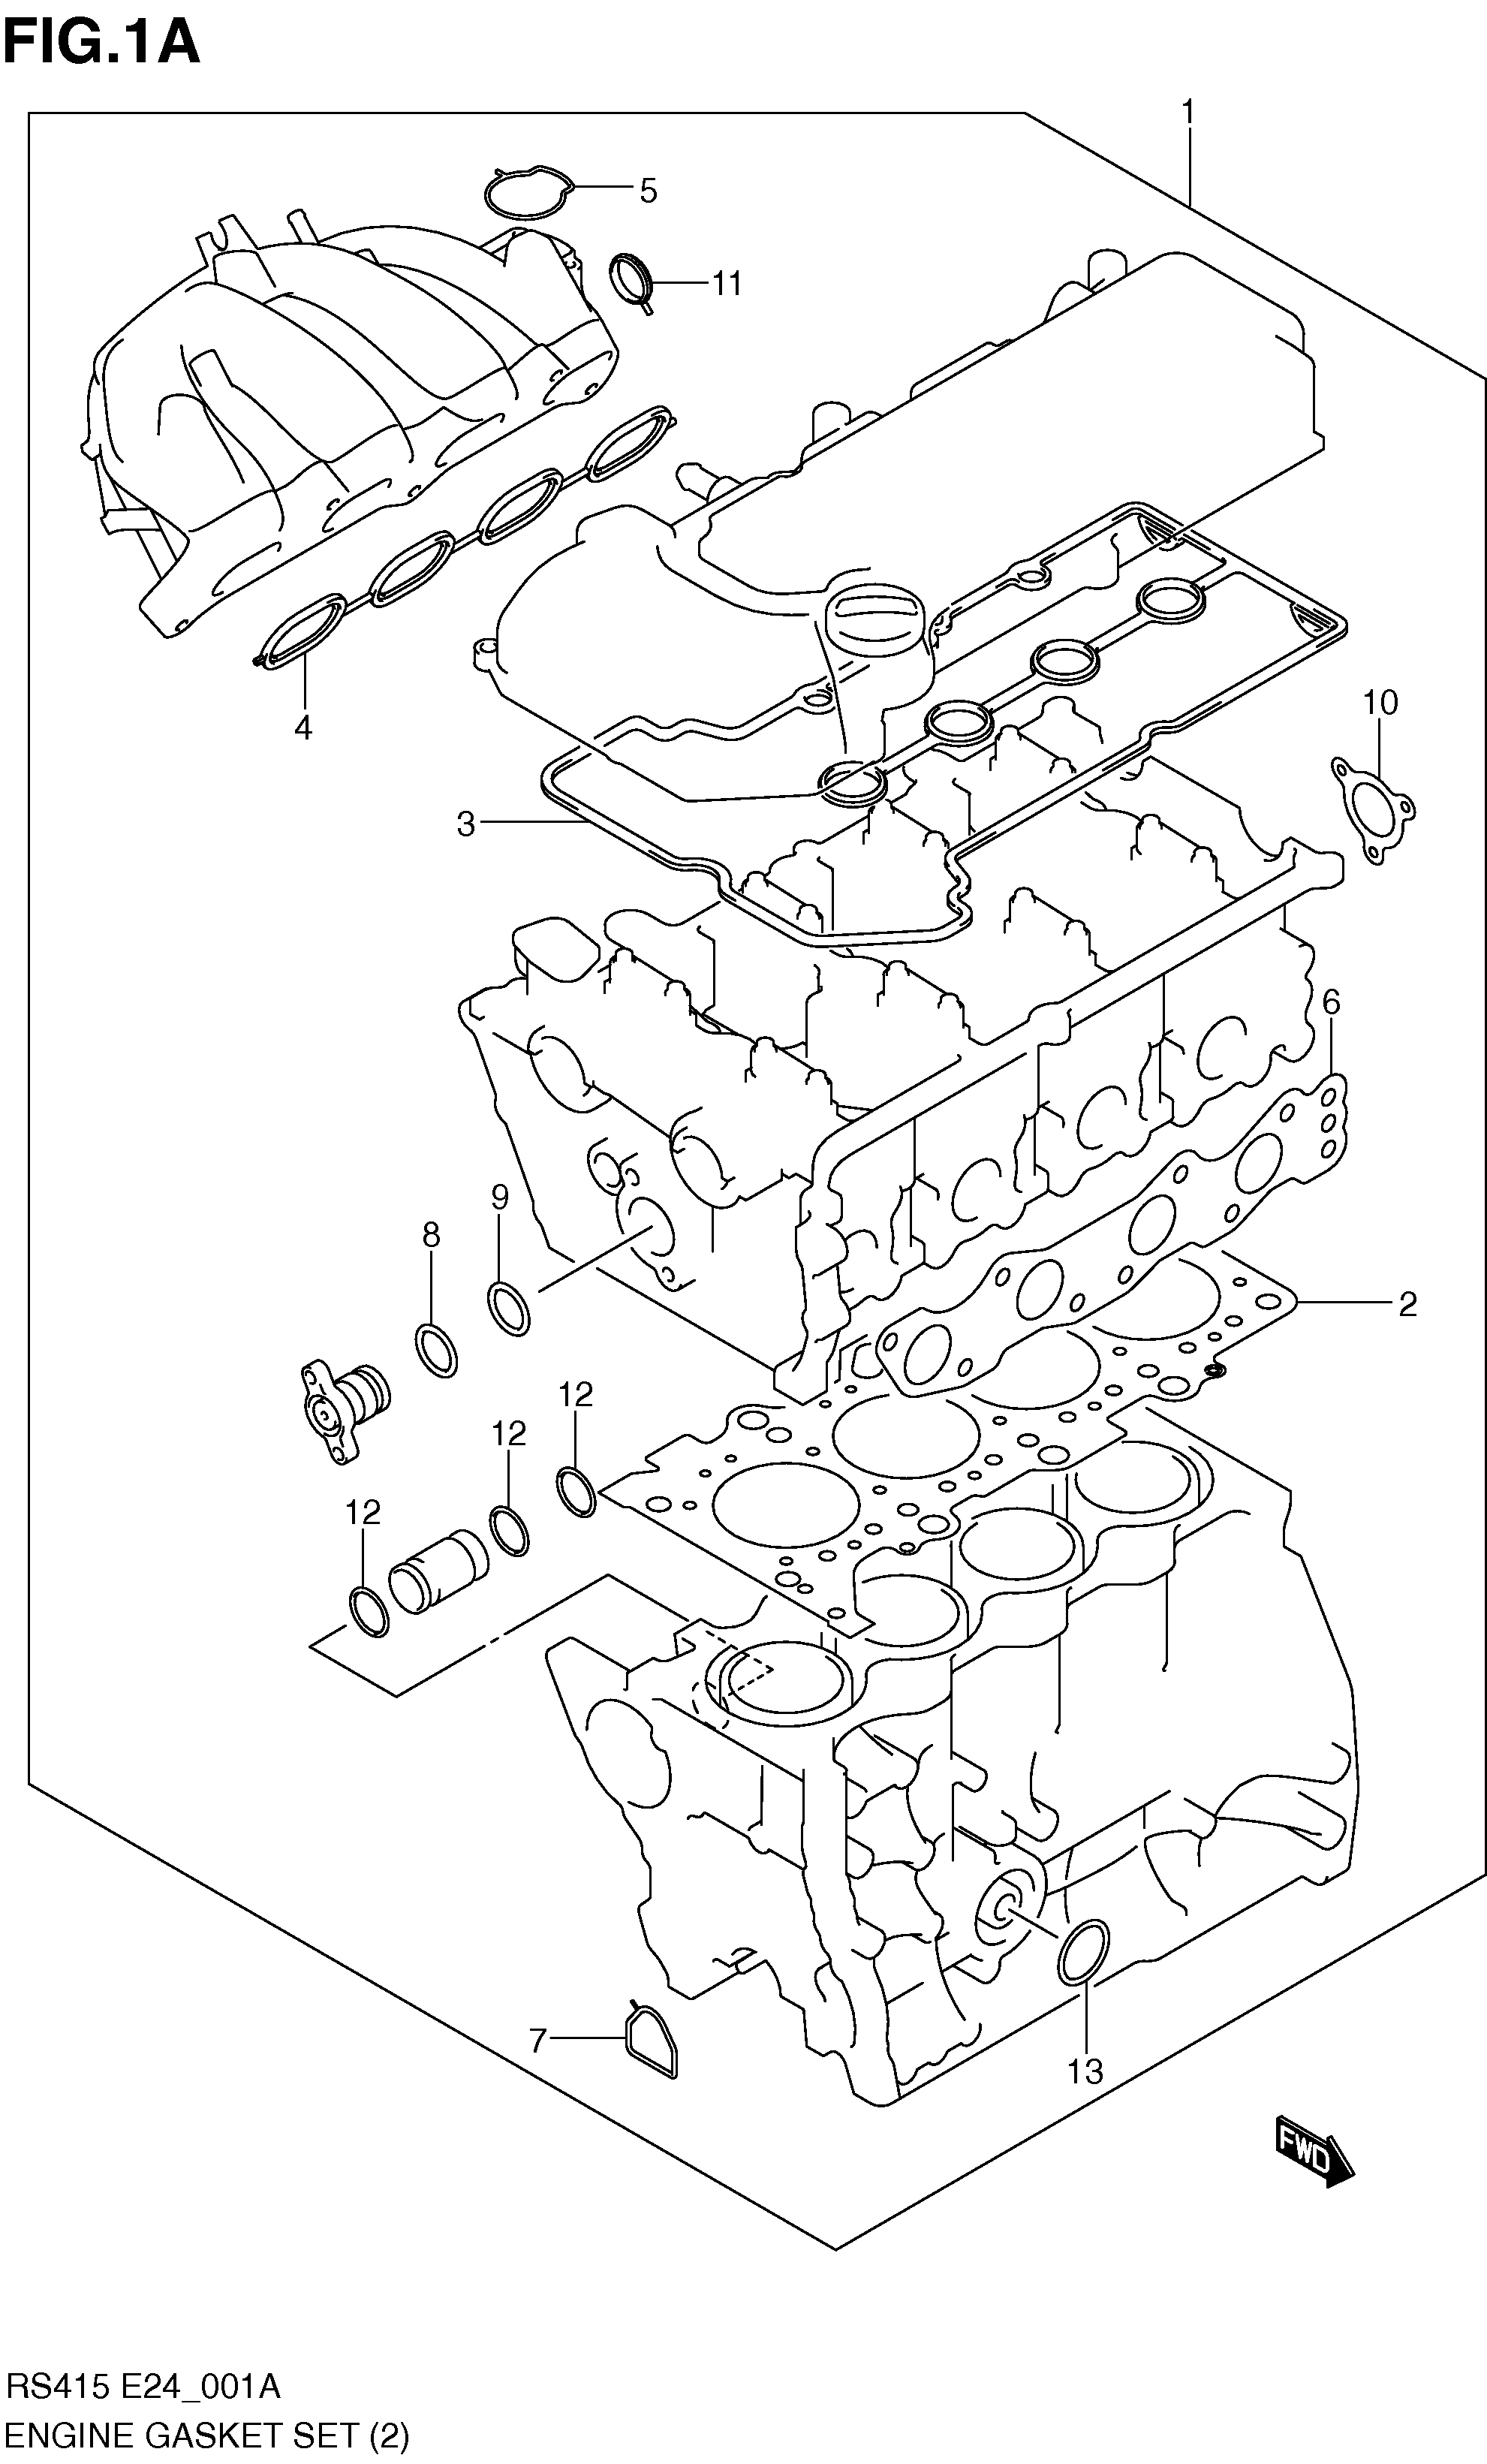 ENGINE GASKET SET (RS413:E35,RS415)